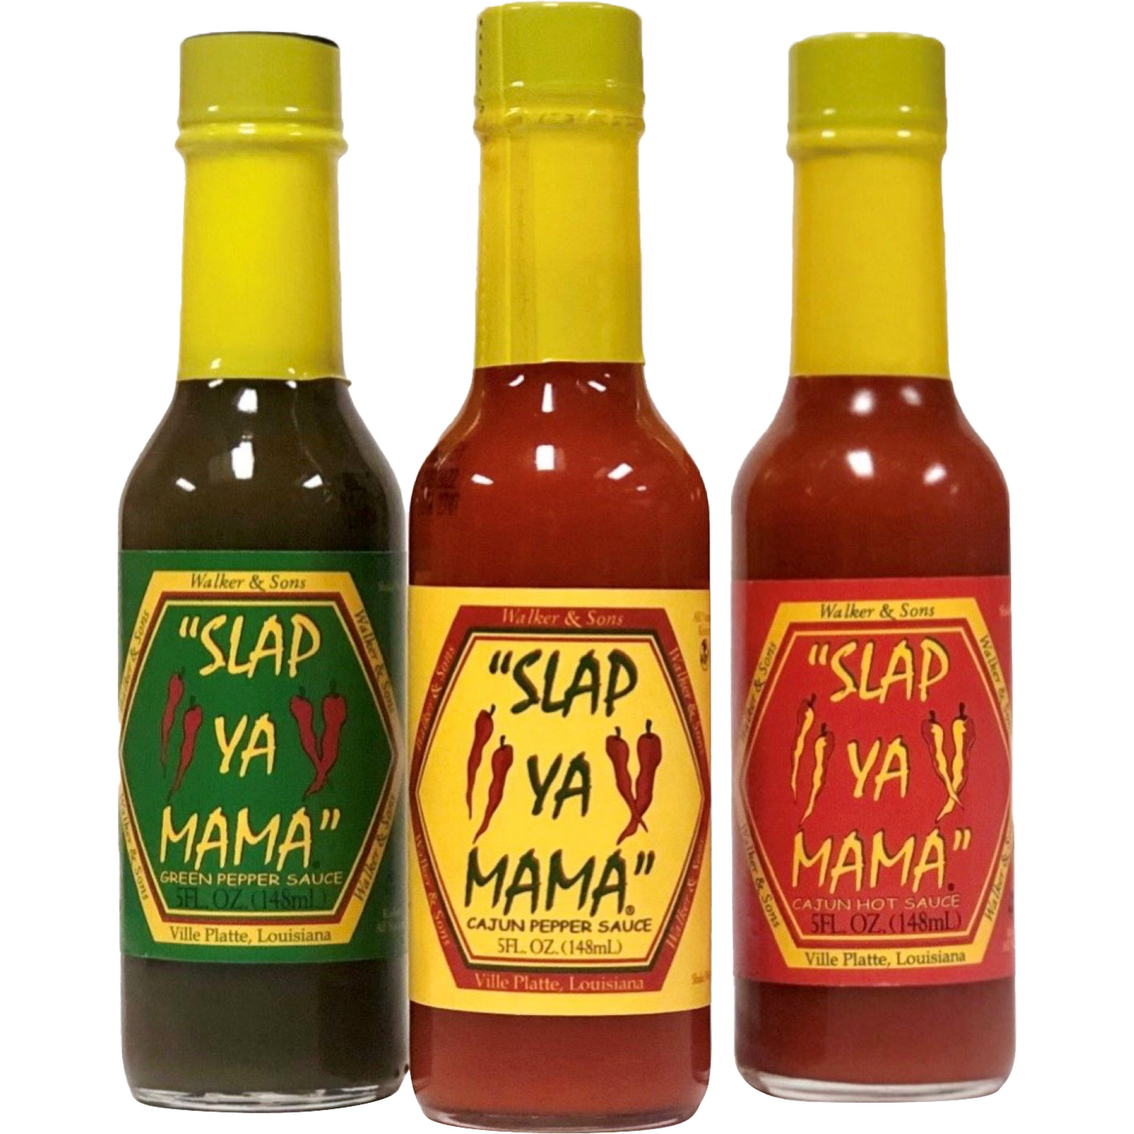 Slap Ya Mama All Natural Louisiana Style Hot Sauce Variety Pack 12 ct., 5 oz. each